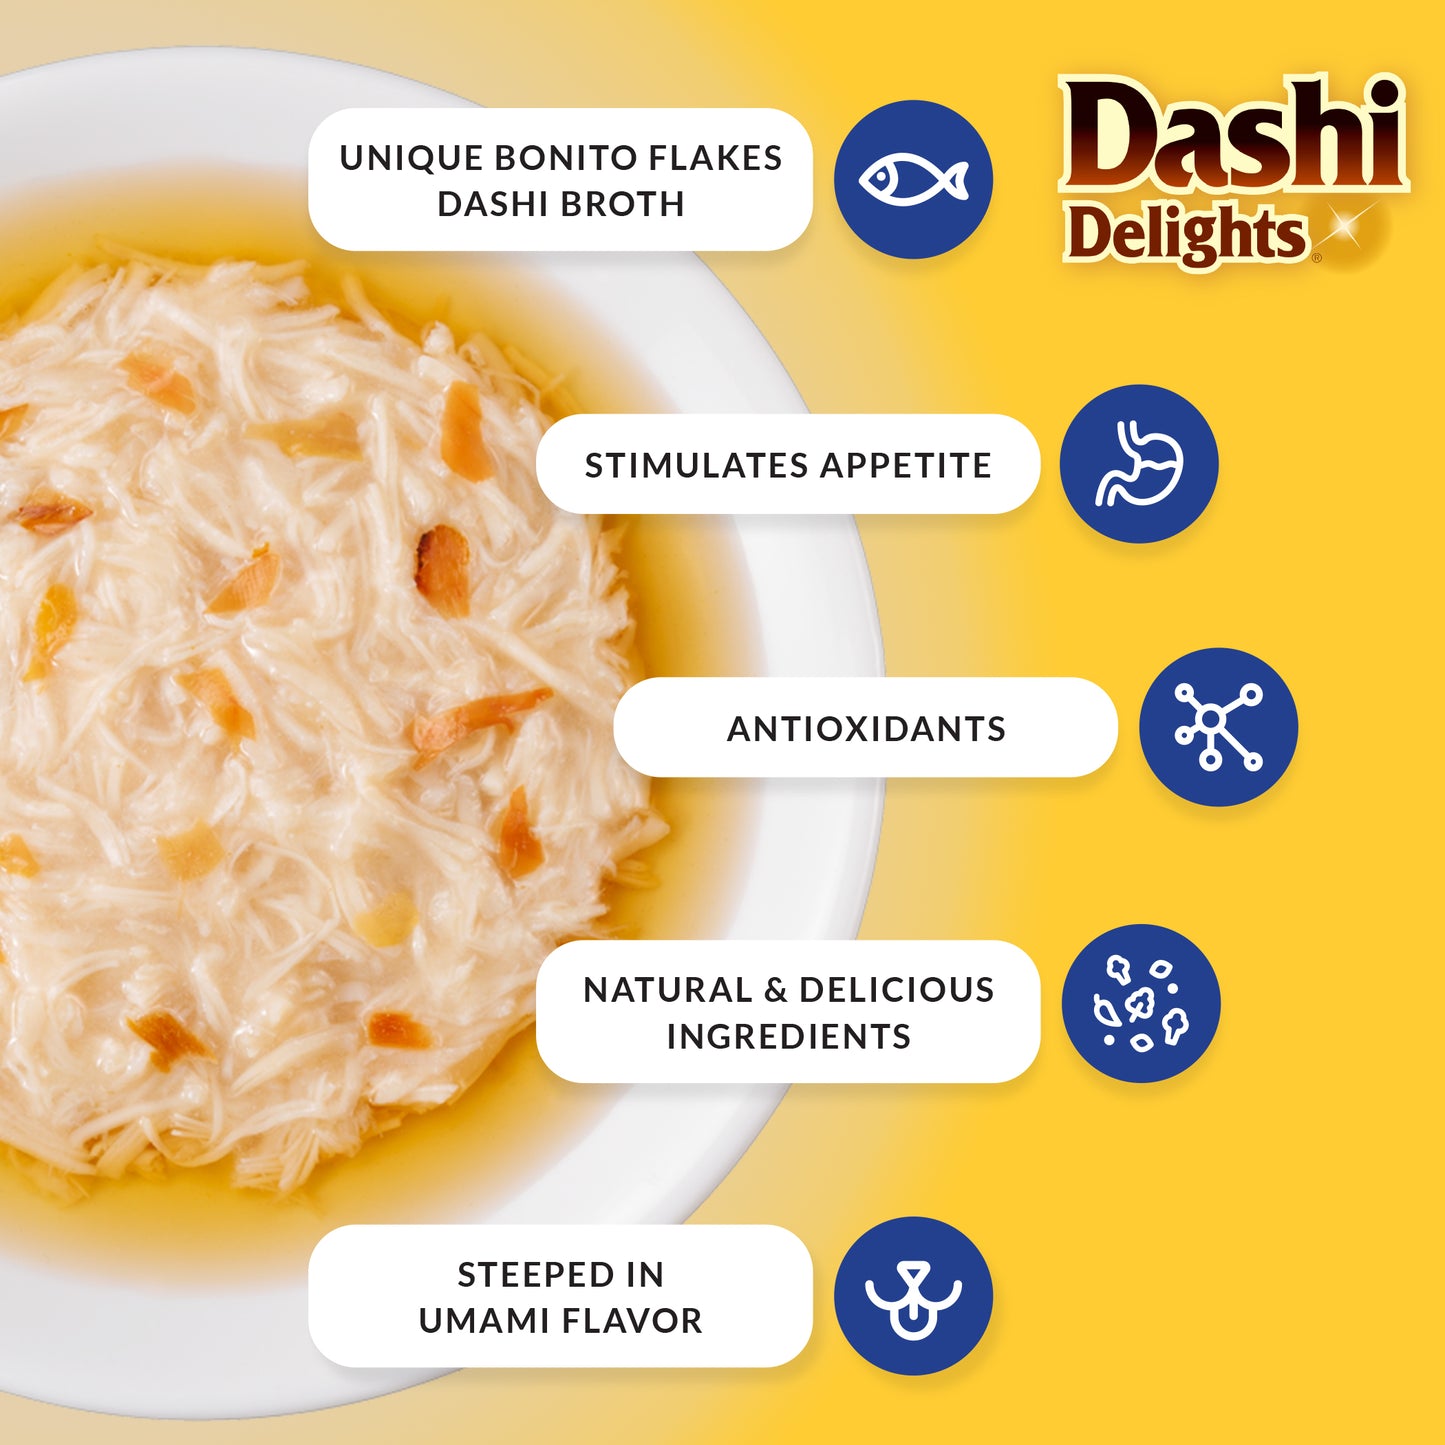 Churu Dashi Delights Chicken Variety Pack (12ct)